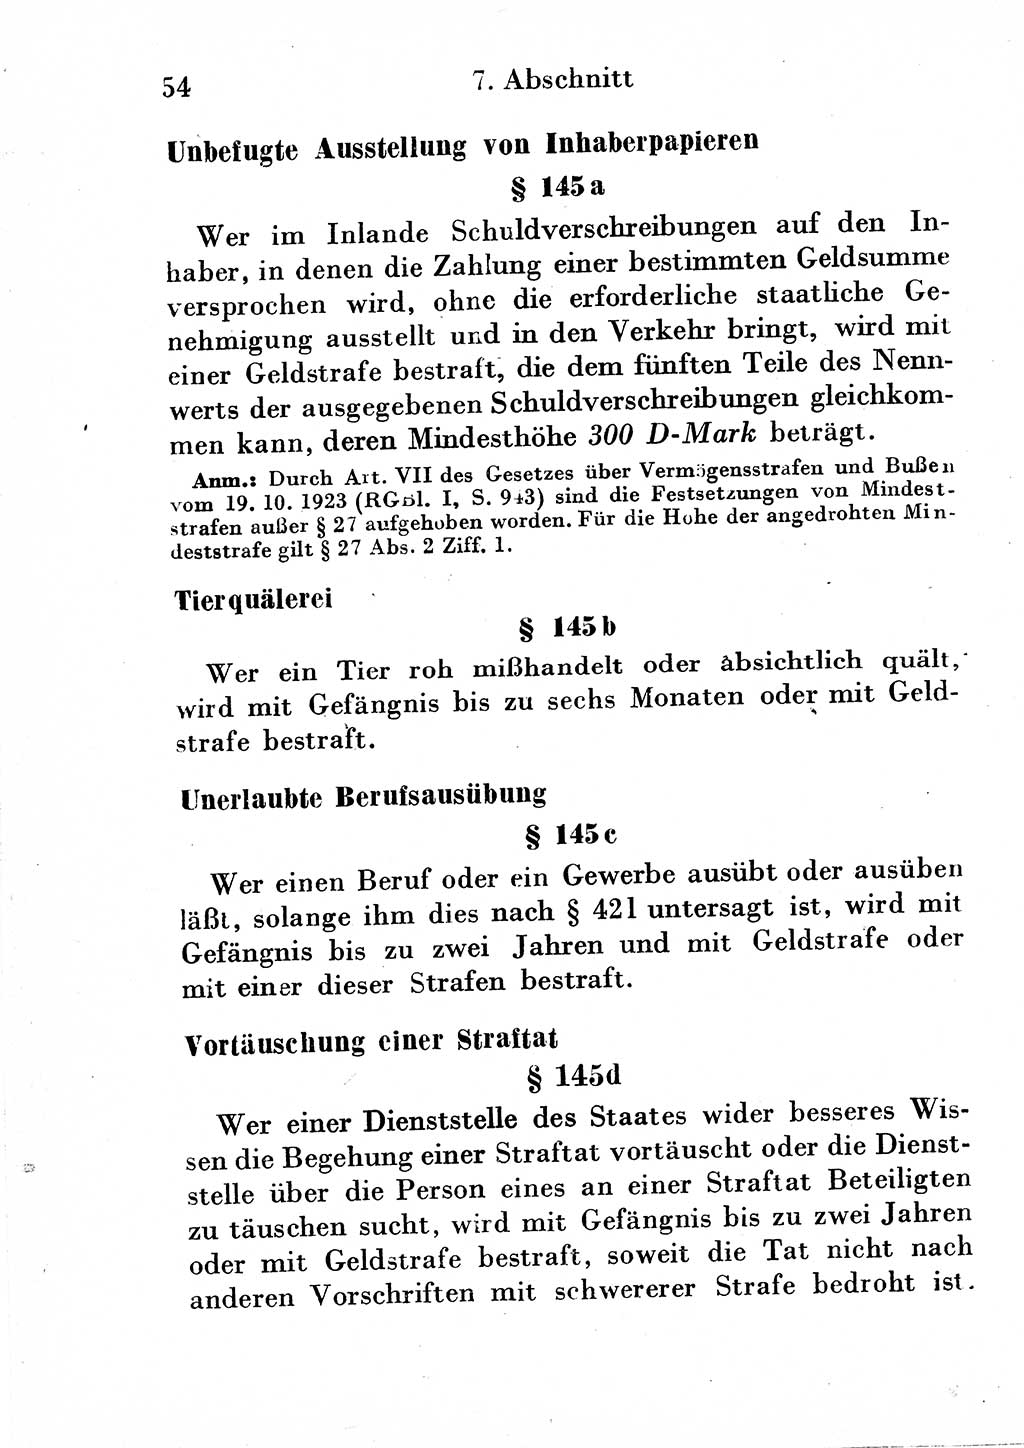 Strafgesetzbuch (StGB) und andere Strafgesetze [Deutsche Demokratische Republik (DDR)] 1954, Seite 54 (StGB Strafges. DDR 1954, S. 54)